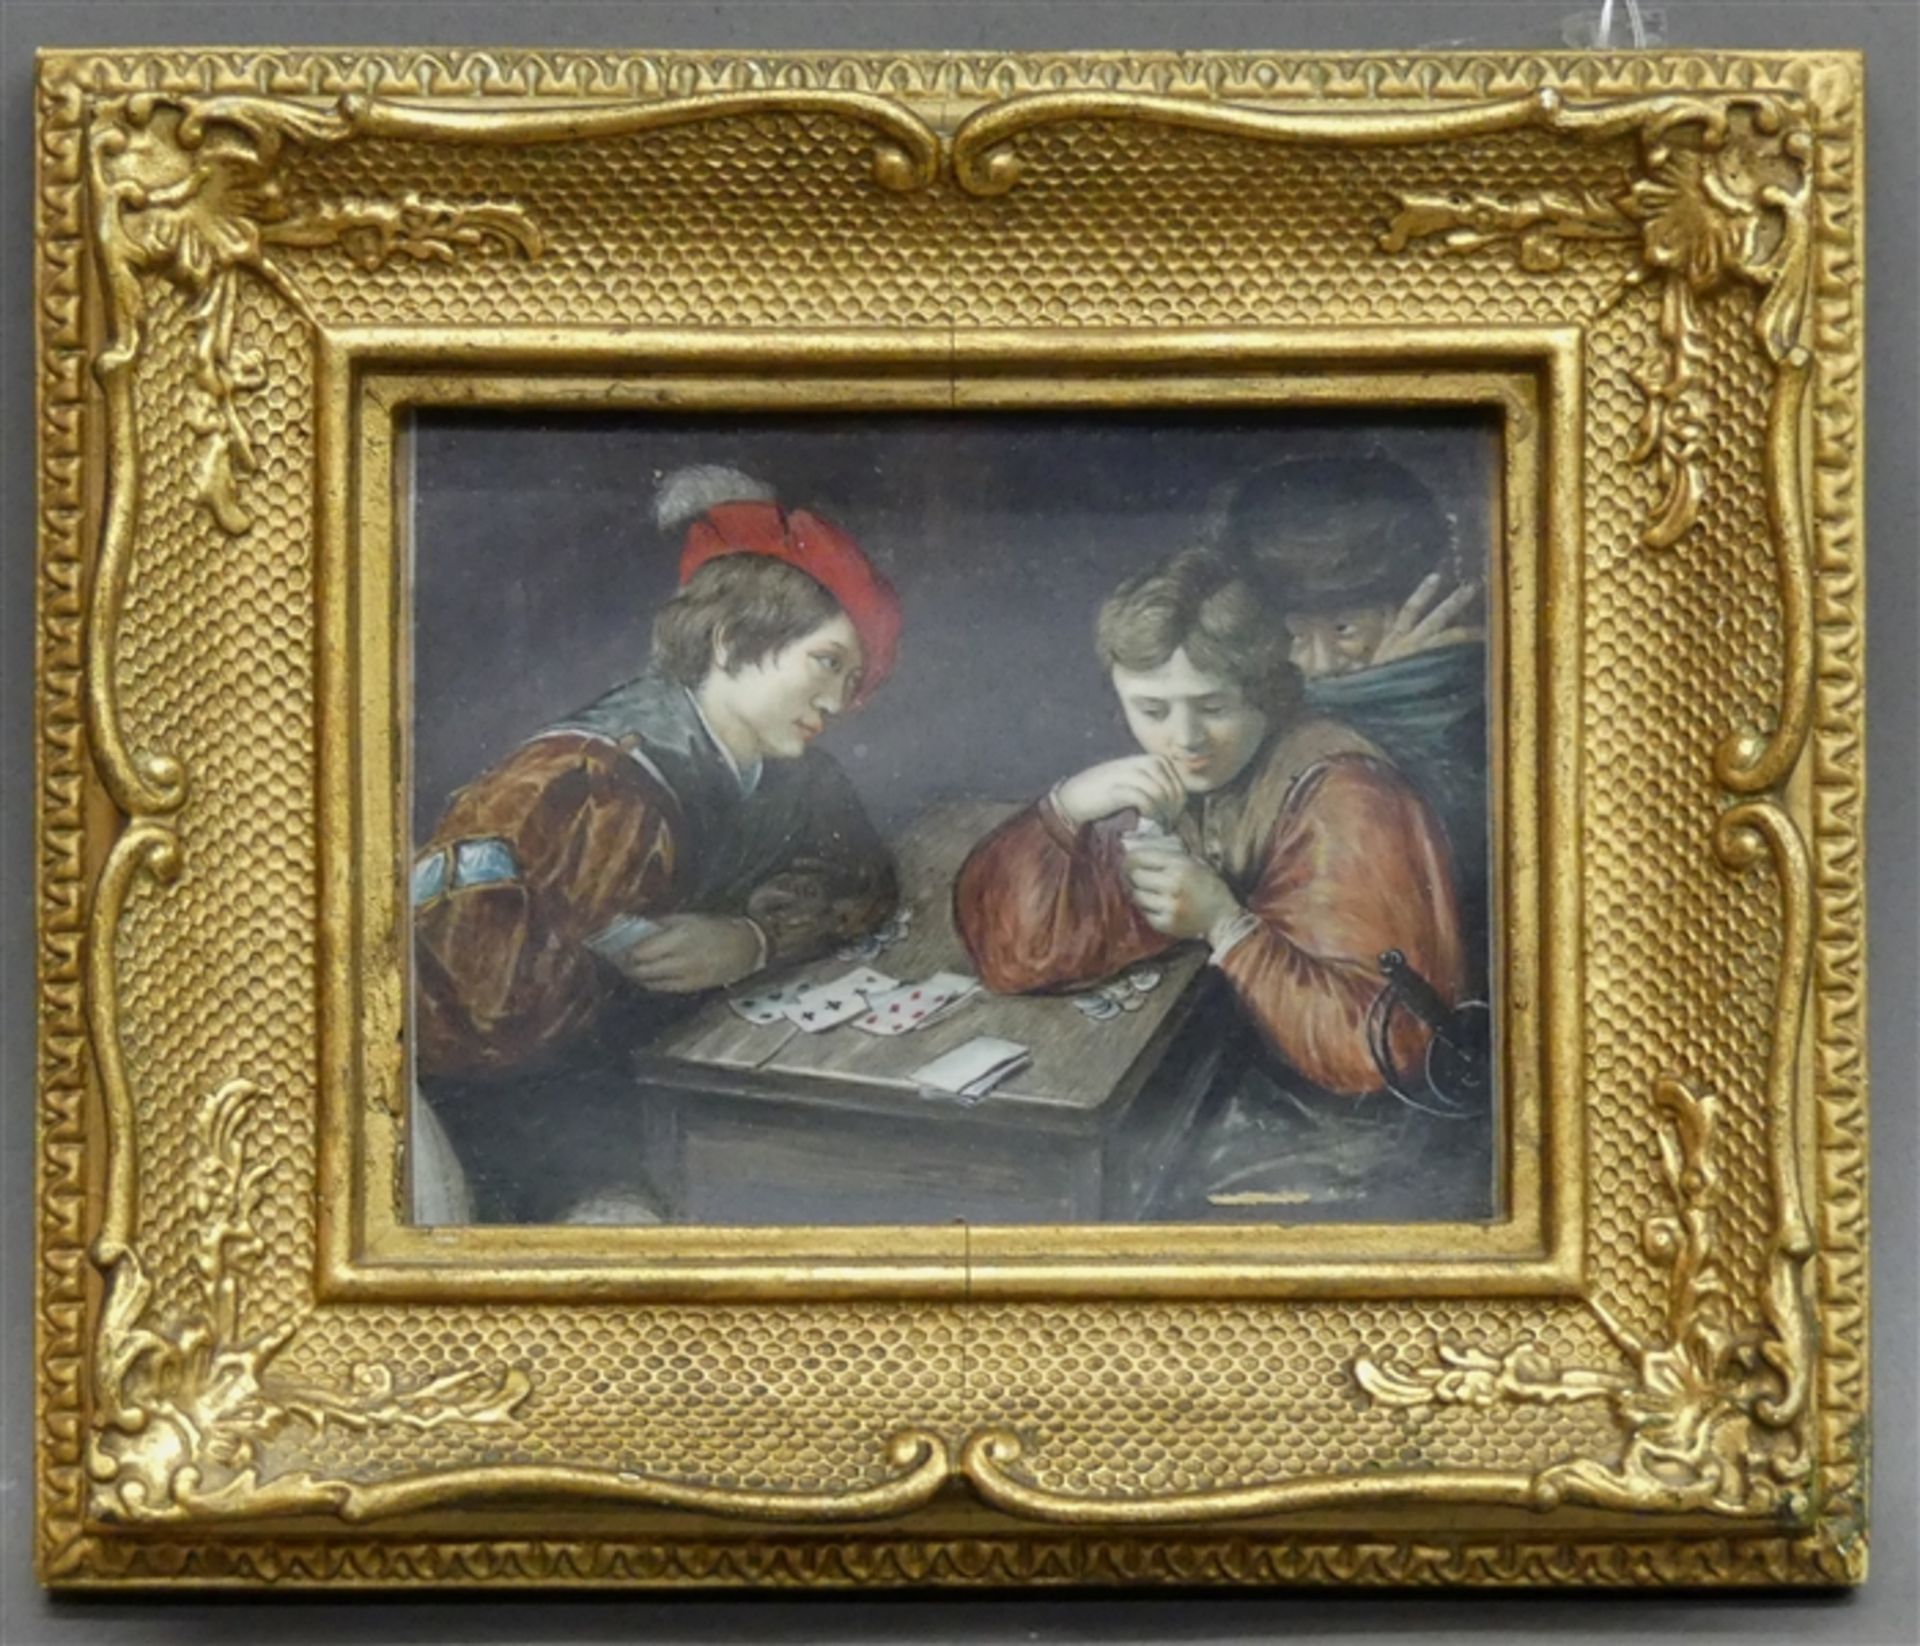 Miniatur, um 1900 auf Elfenbein, "Mittelalterliche Szene: 2 Männer beim Kartenspiel", 9x12 cm, im